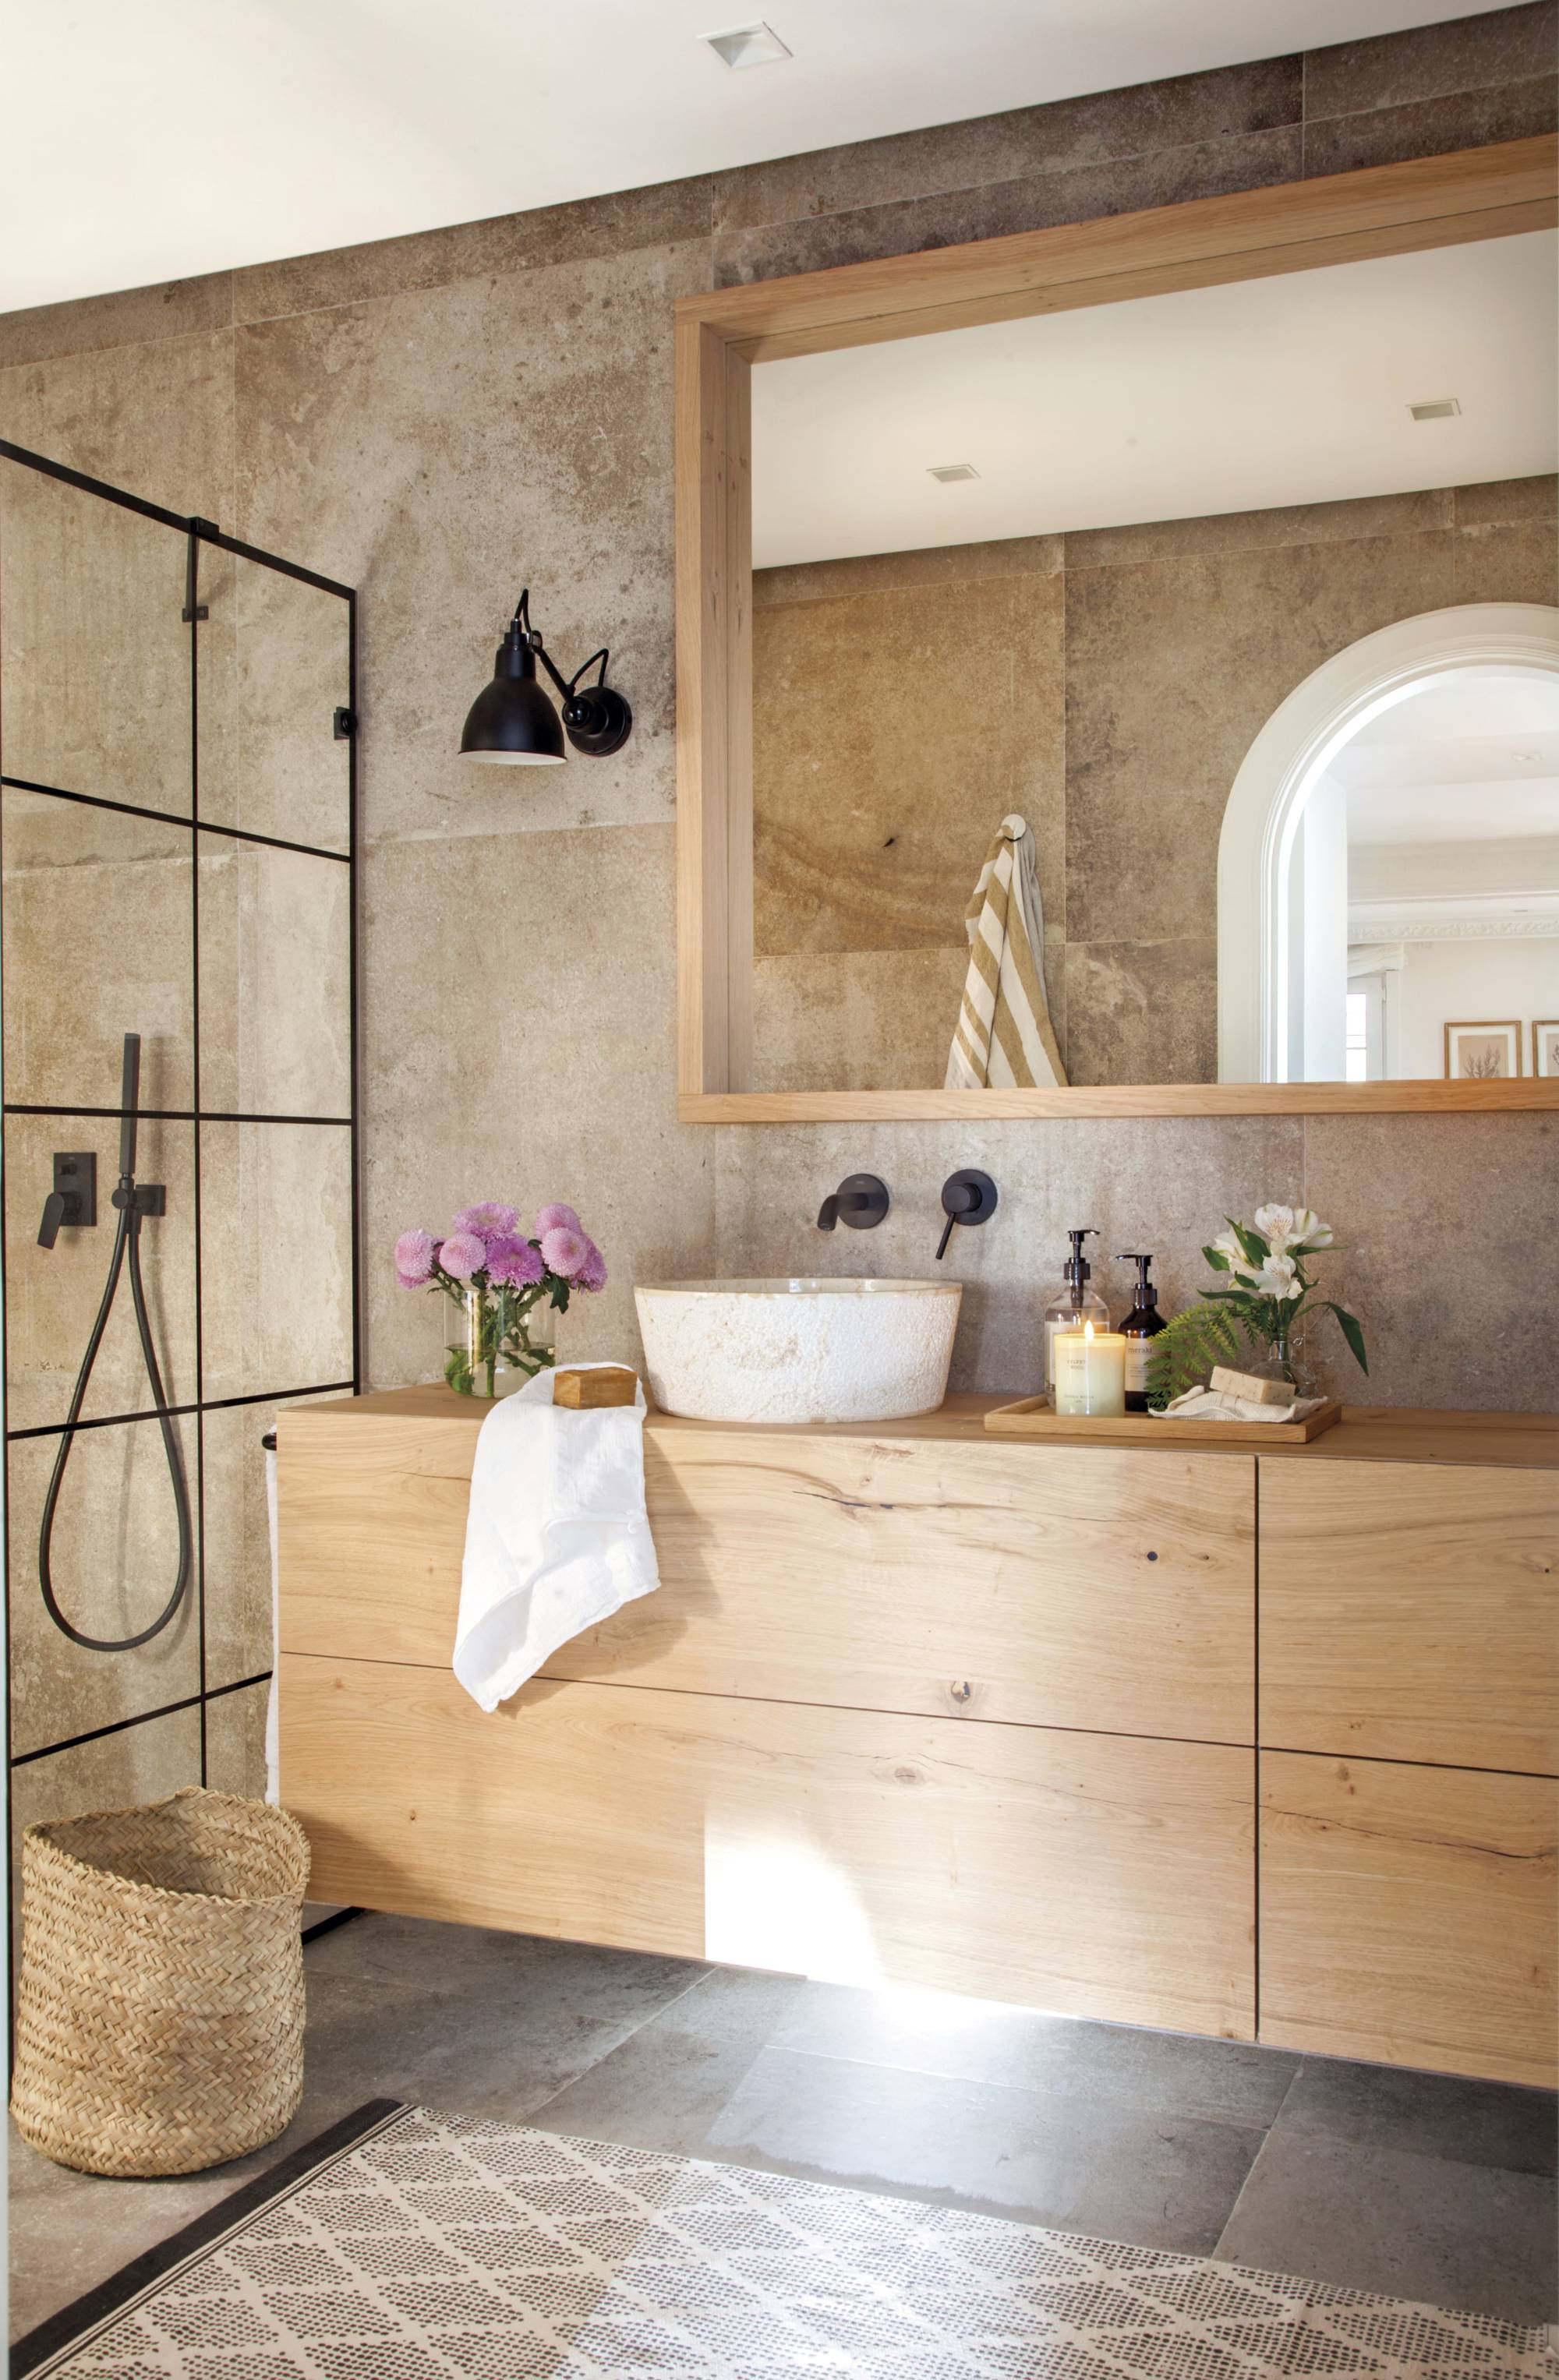 Baño de madera con mueble a medida y ducha con mampara